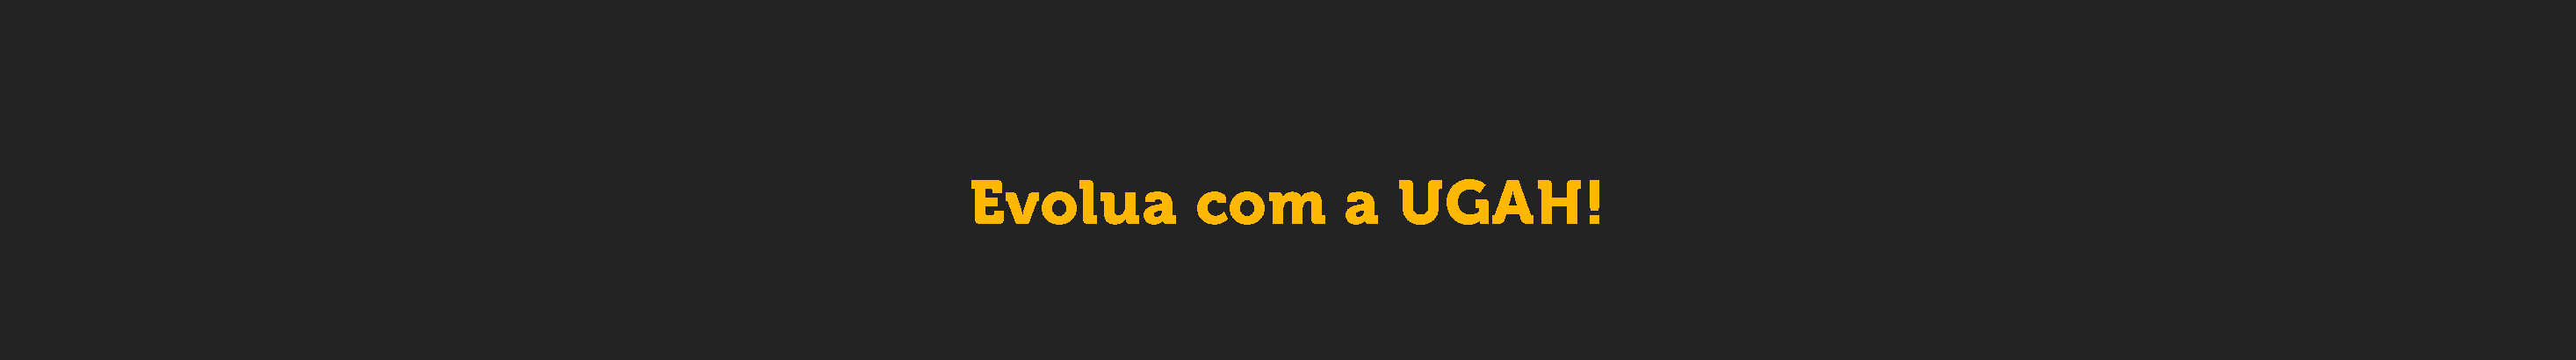 Баннер профиля Agência UGAH!